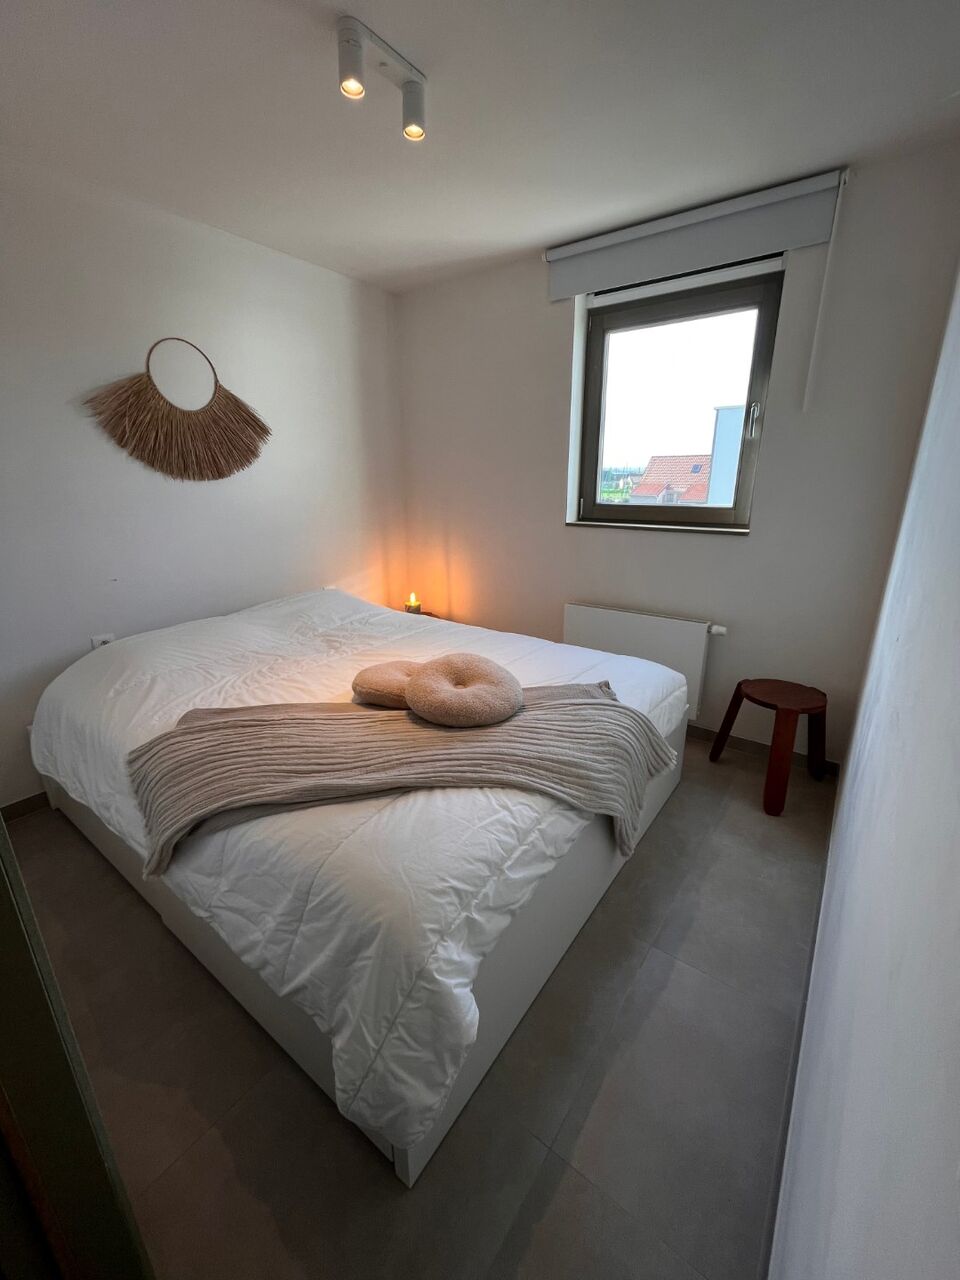 Moderne strakke woning (2020) met 2 slaapkamers in vakantiedomein te Koksijde met 80m² bewoonbare oppervlakte en parking/tuin/berging aan woning foto 13